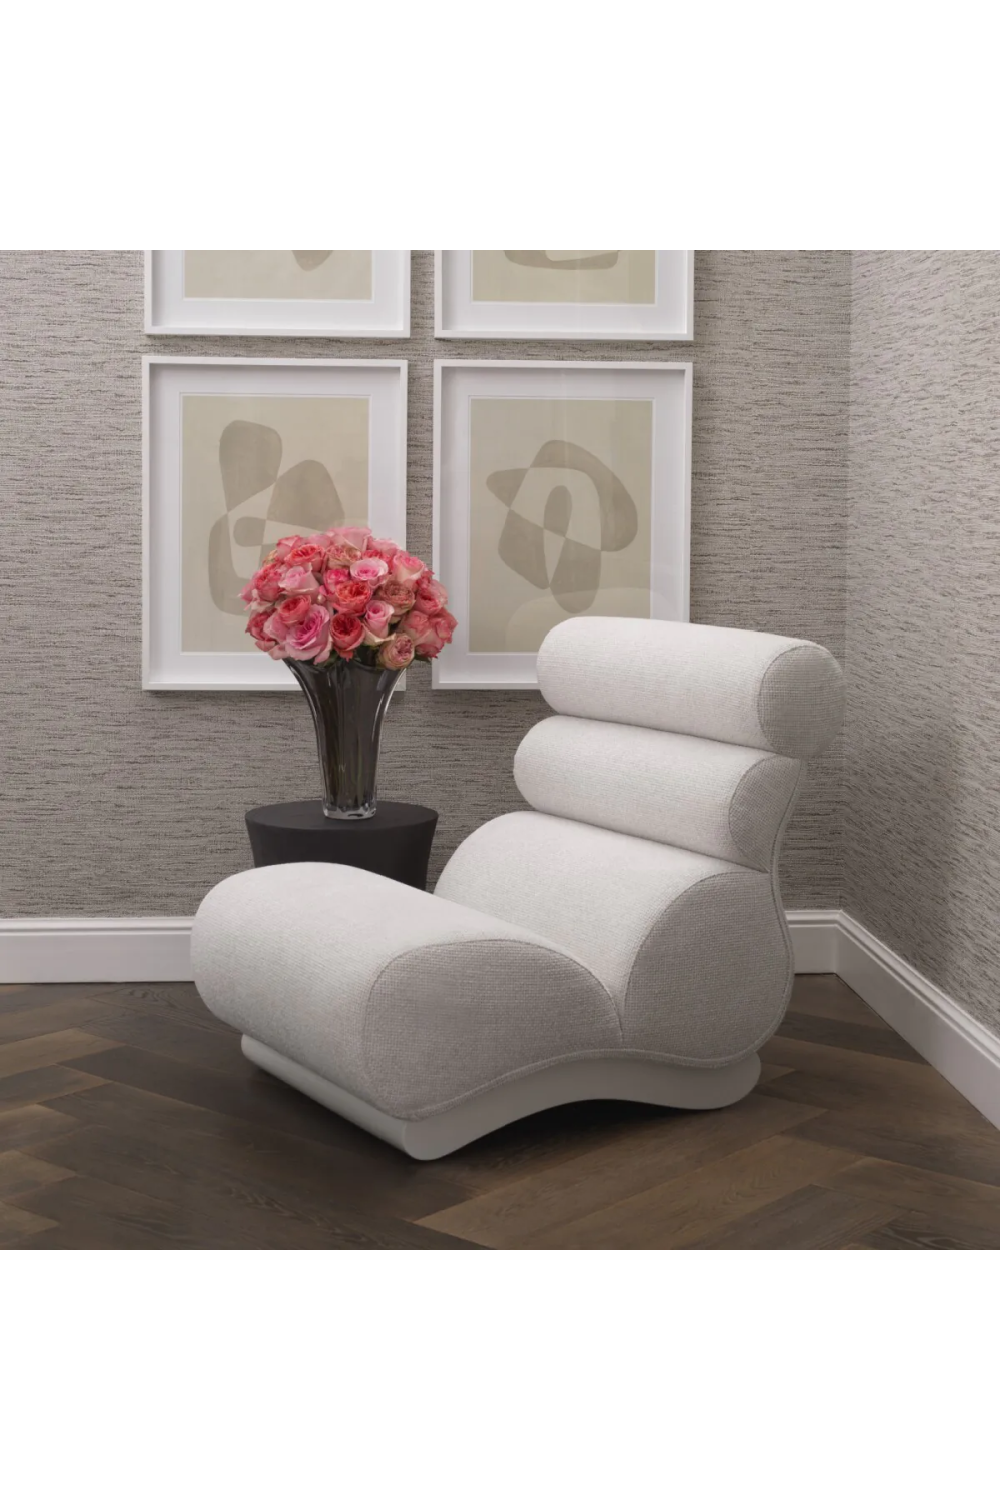 Off-White Modern Lounge Chair | Eichholtz Congreso | Oroa.com